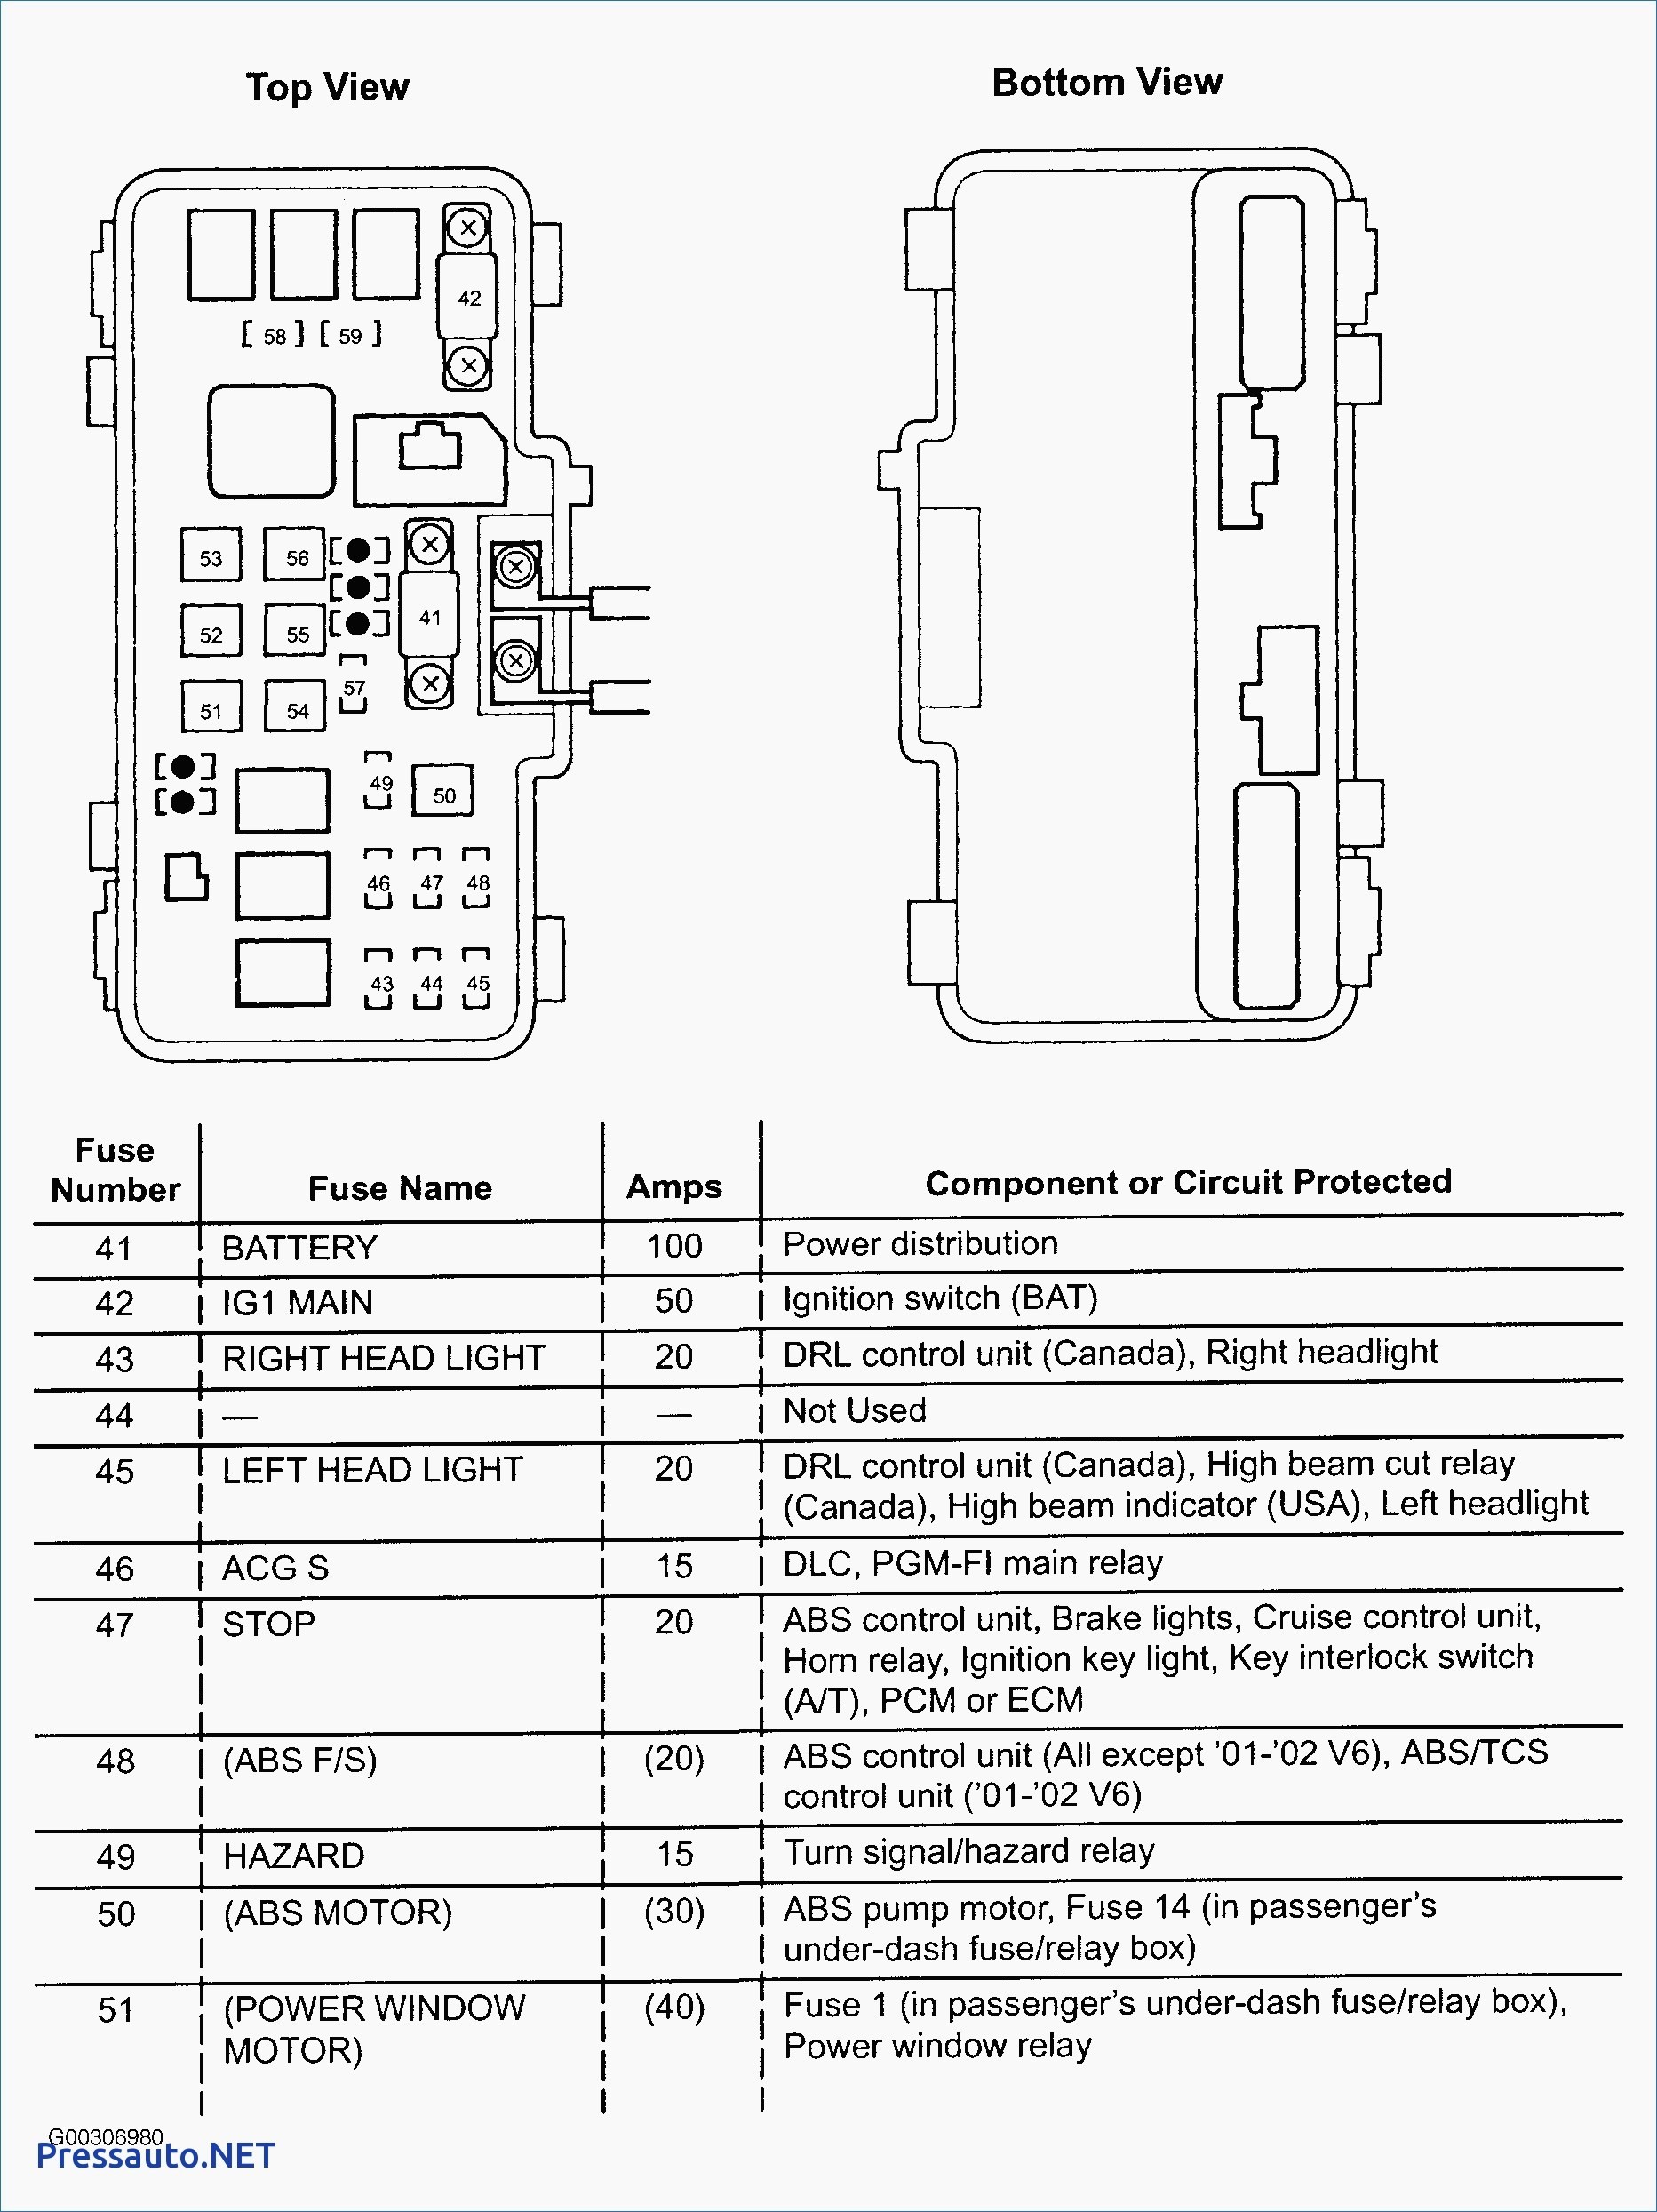 Wiring Diagram For 97 Honda Accord from detoxicrecenze.com